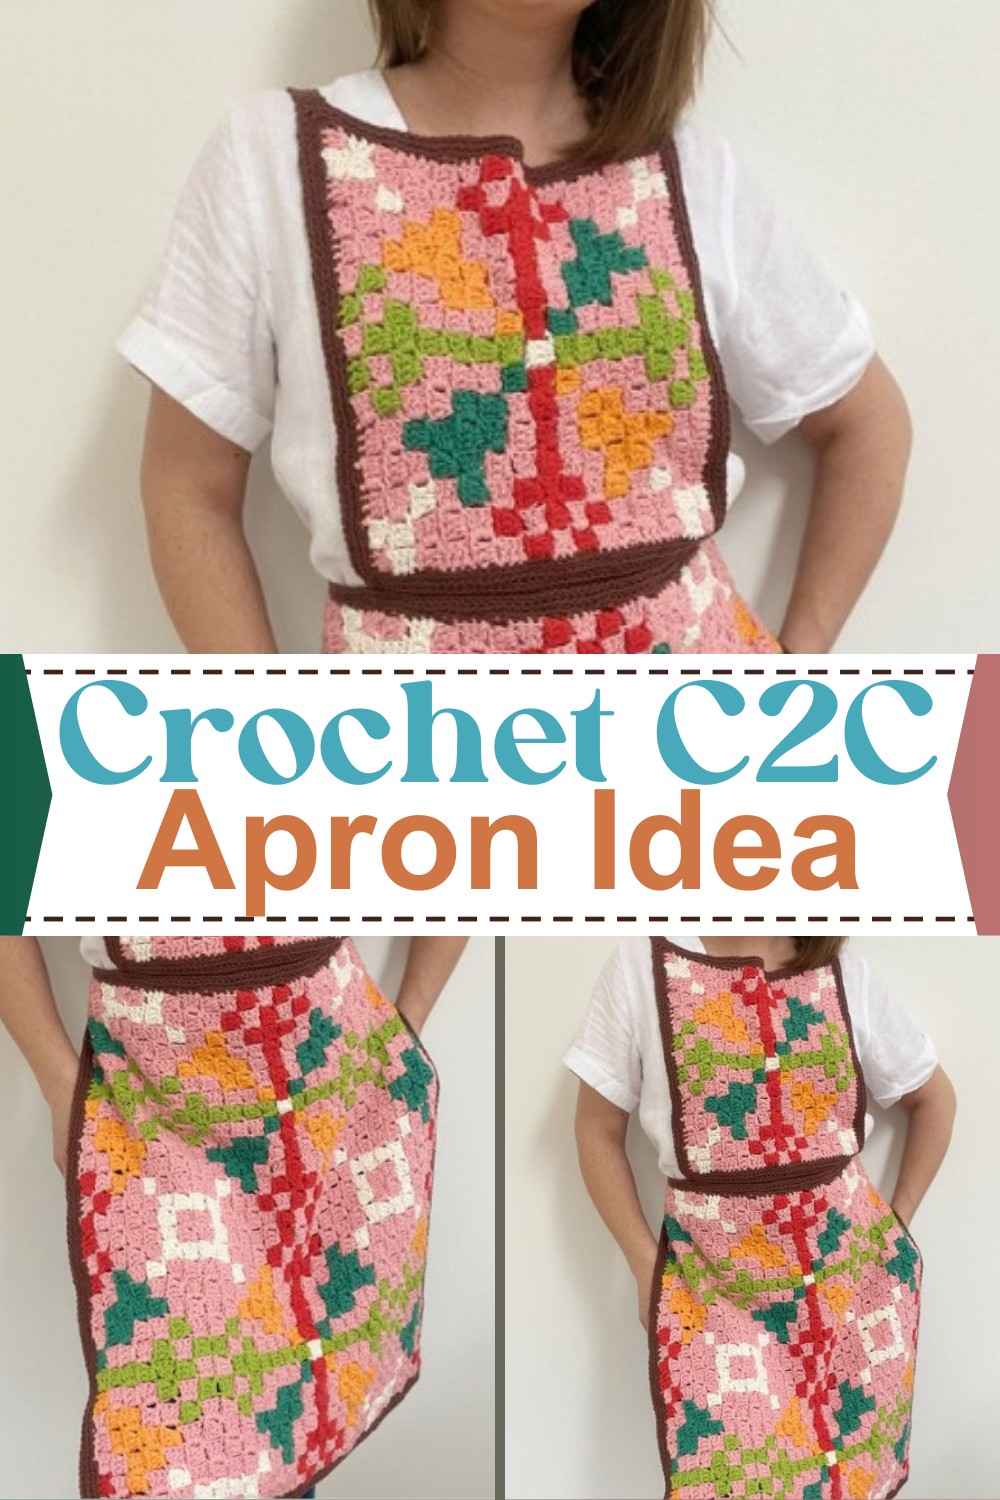 Crochet C2C Apron Idea For Vintage Lovers